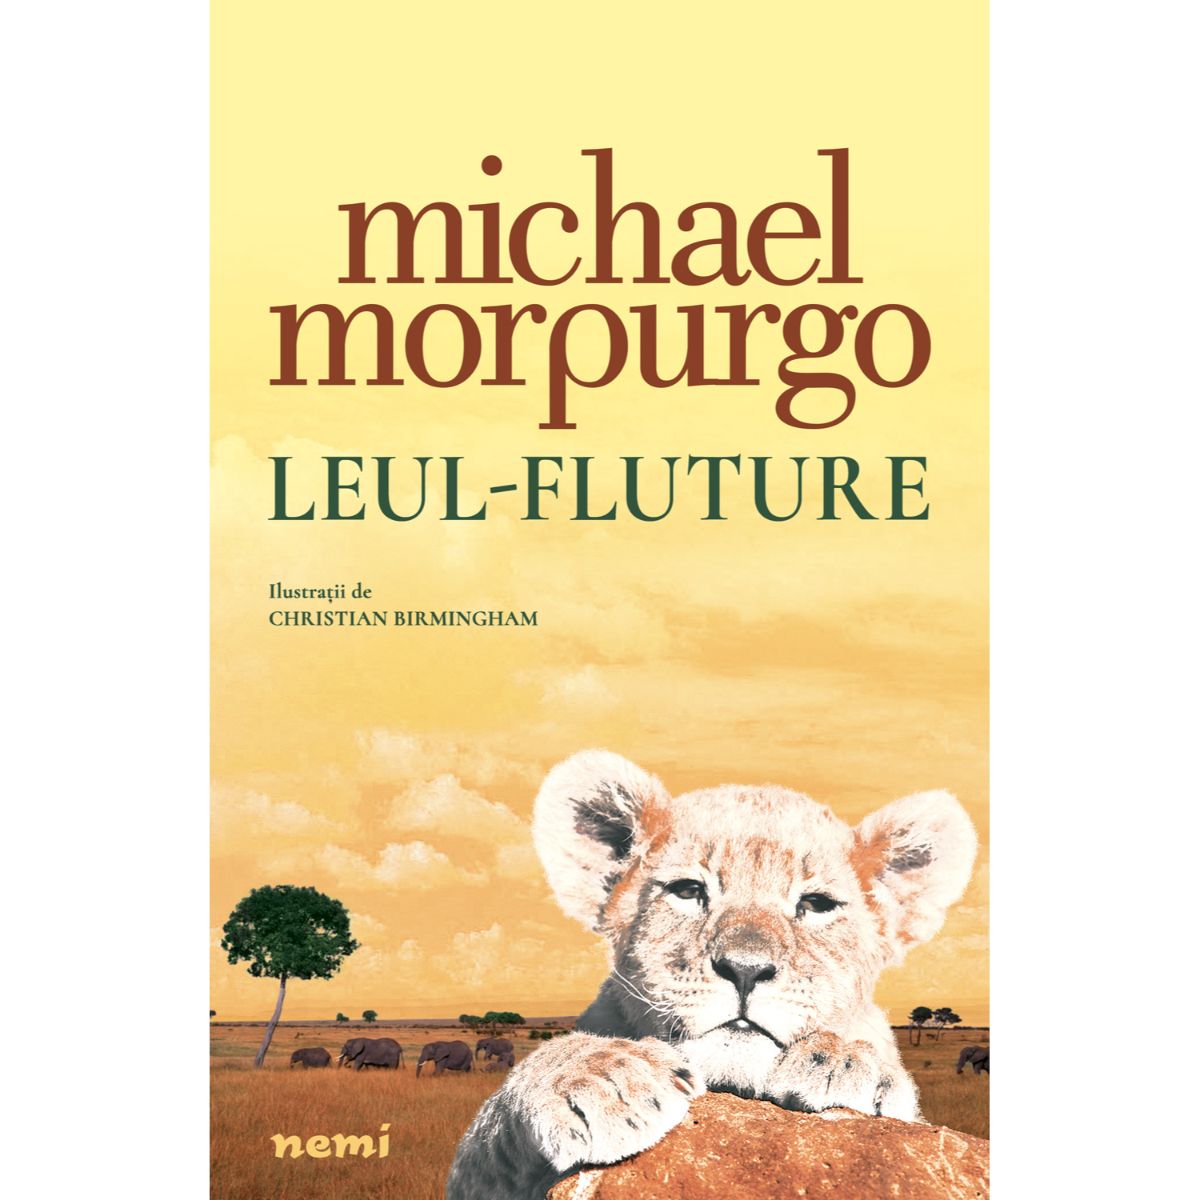 Leul-Fluture, Michael Morpurgo